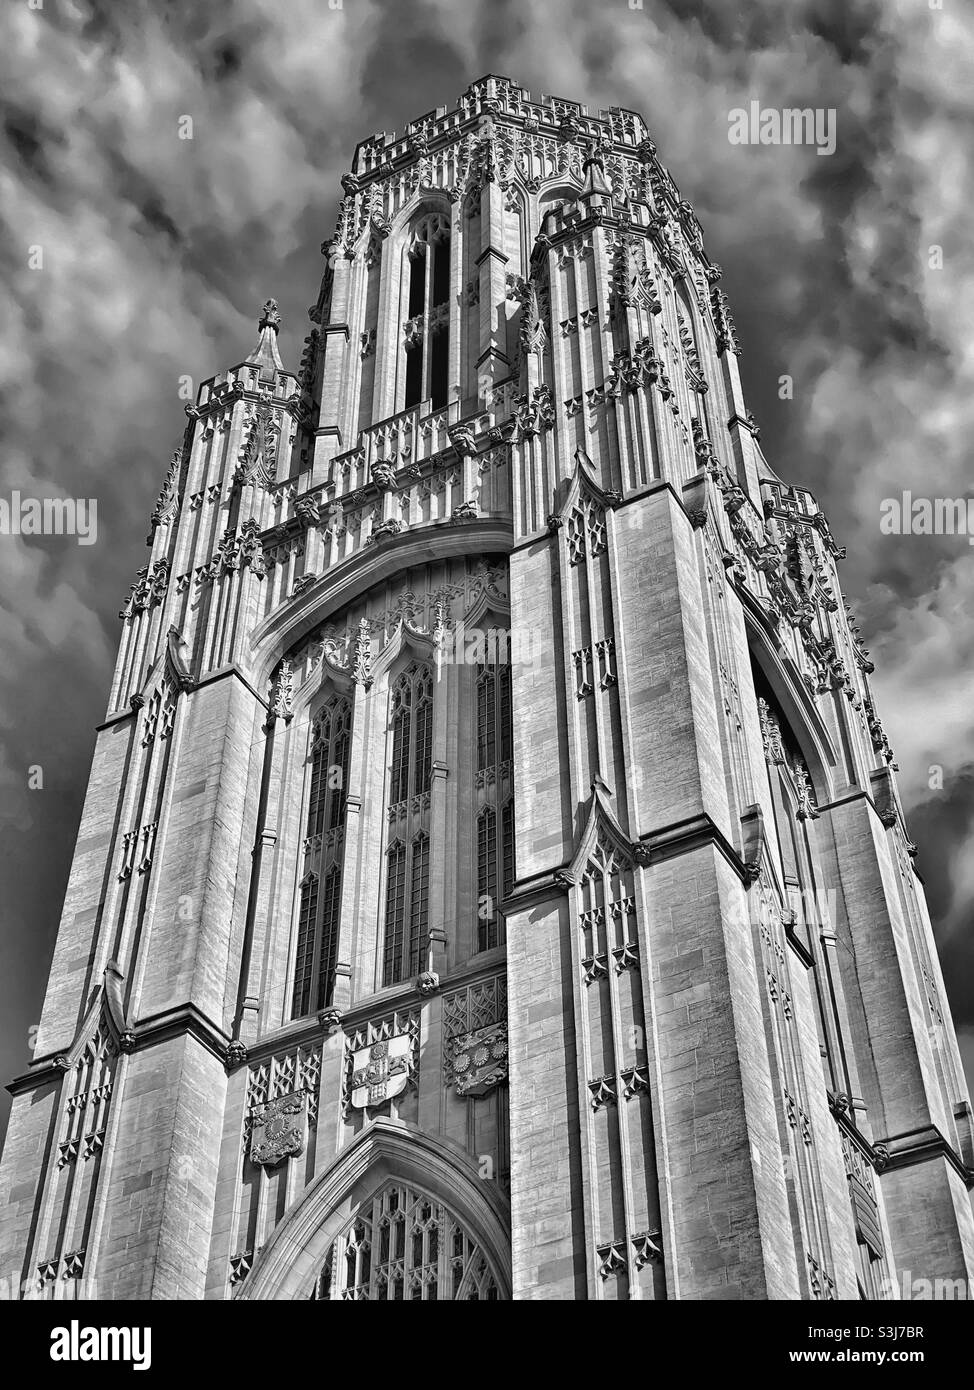 Una vista monocromatica della Wills Memorial Tower in cima a Park Street a Bristol, Inghilterra. Questa iconica torre neo-gotica è stata progettata da Sir George Oatley ed è un monumento a Henry Overton Wills III Foto Stock